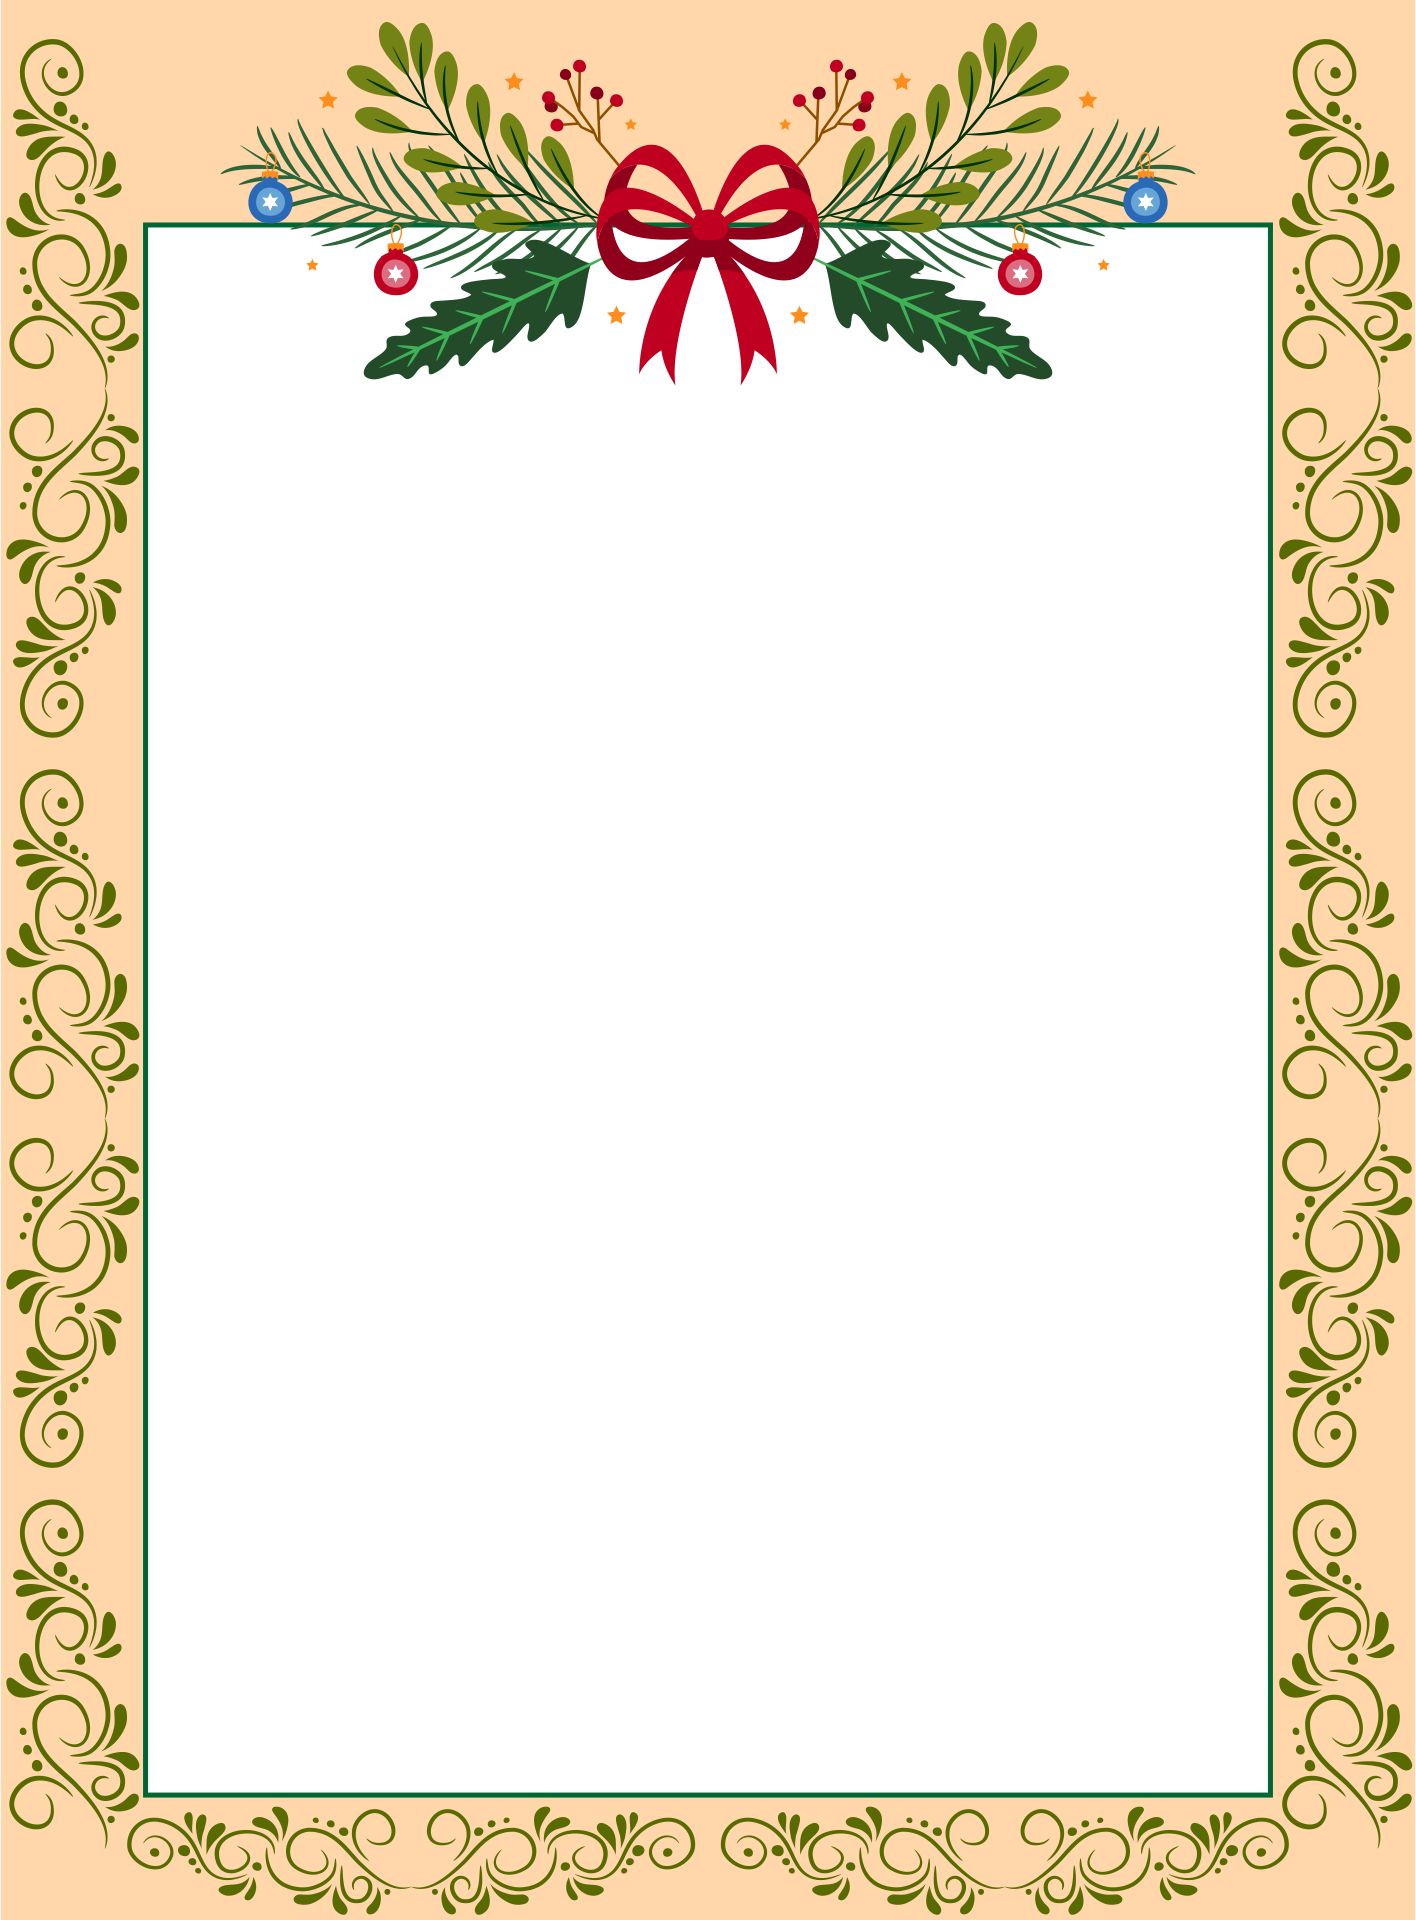  Free Printable Christmas Border Stationery Printable Templates